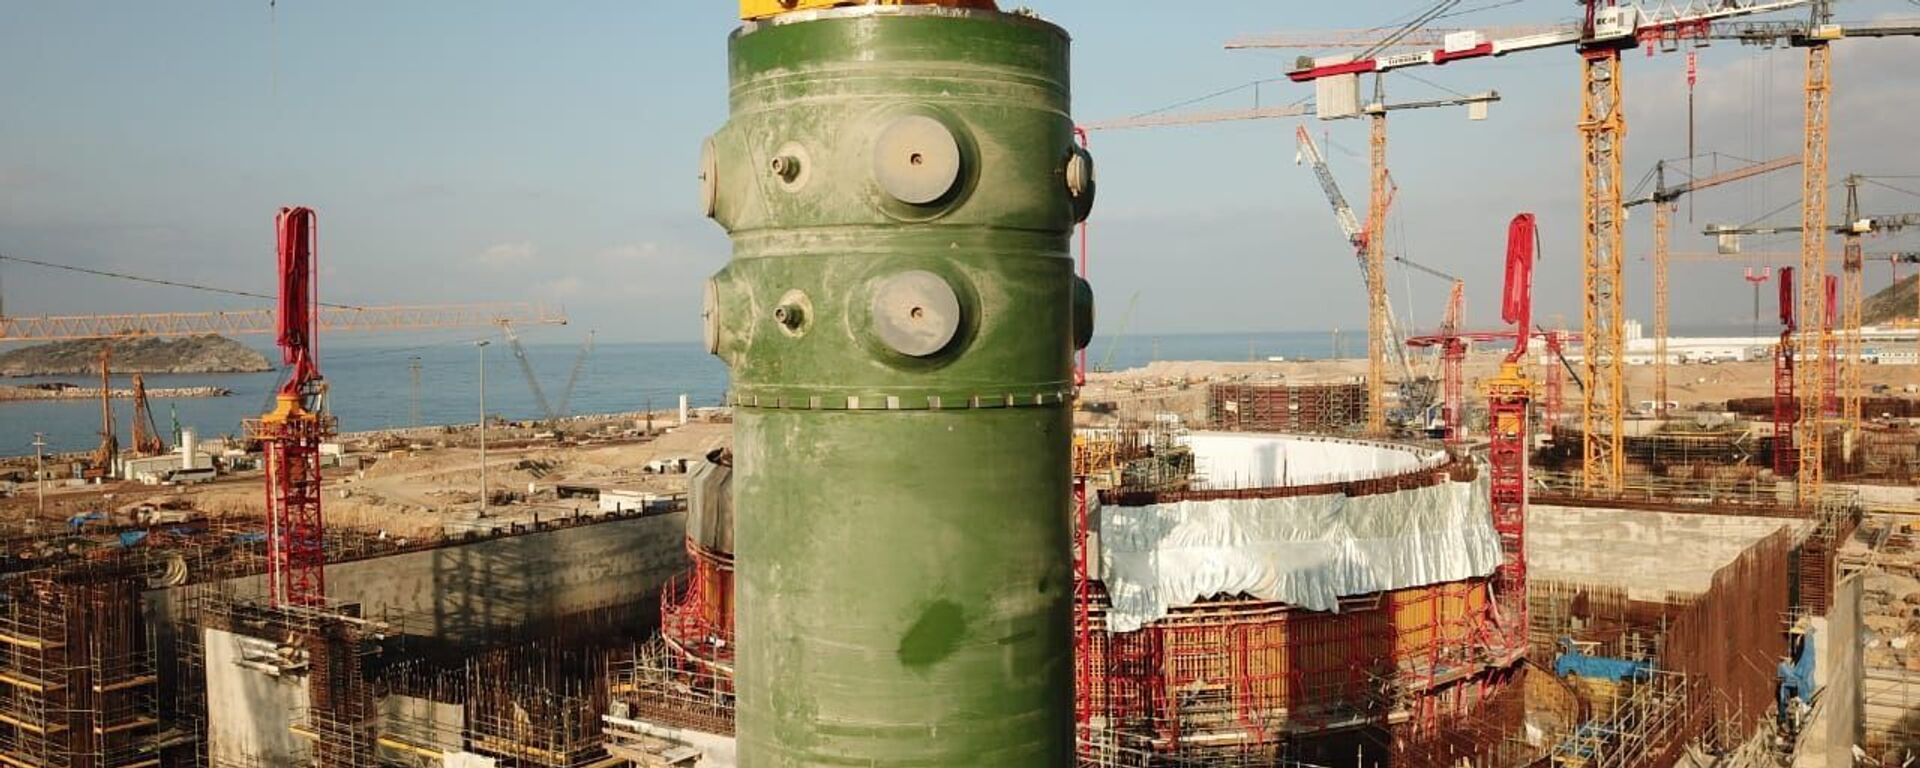 Akkuyu Nükleer Güç Santrali’nde birinci ünitenin reaktör kabı - Sputnik Türkiye, 1920, 10.08.2021